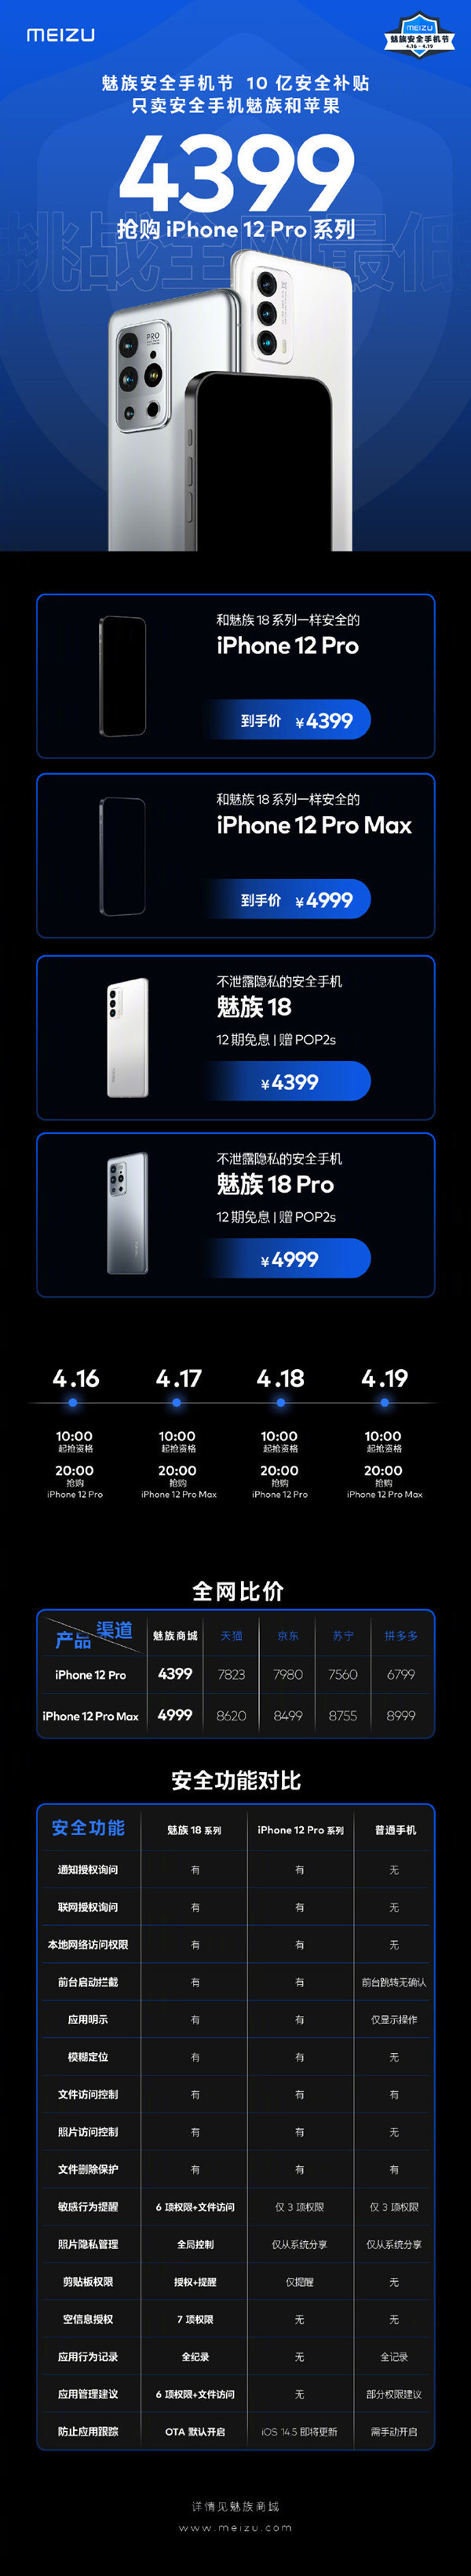 iPhone 12 Pro系列到手价低至4399元